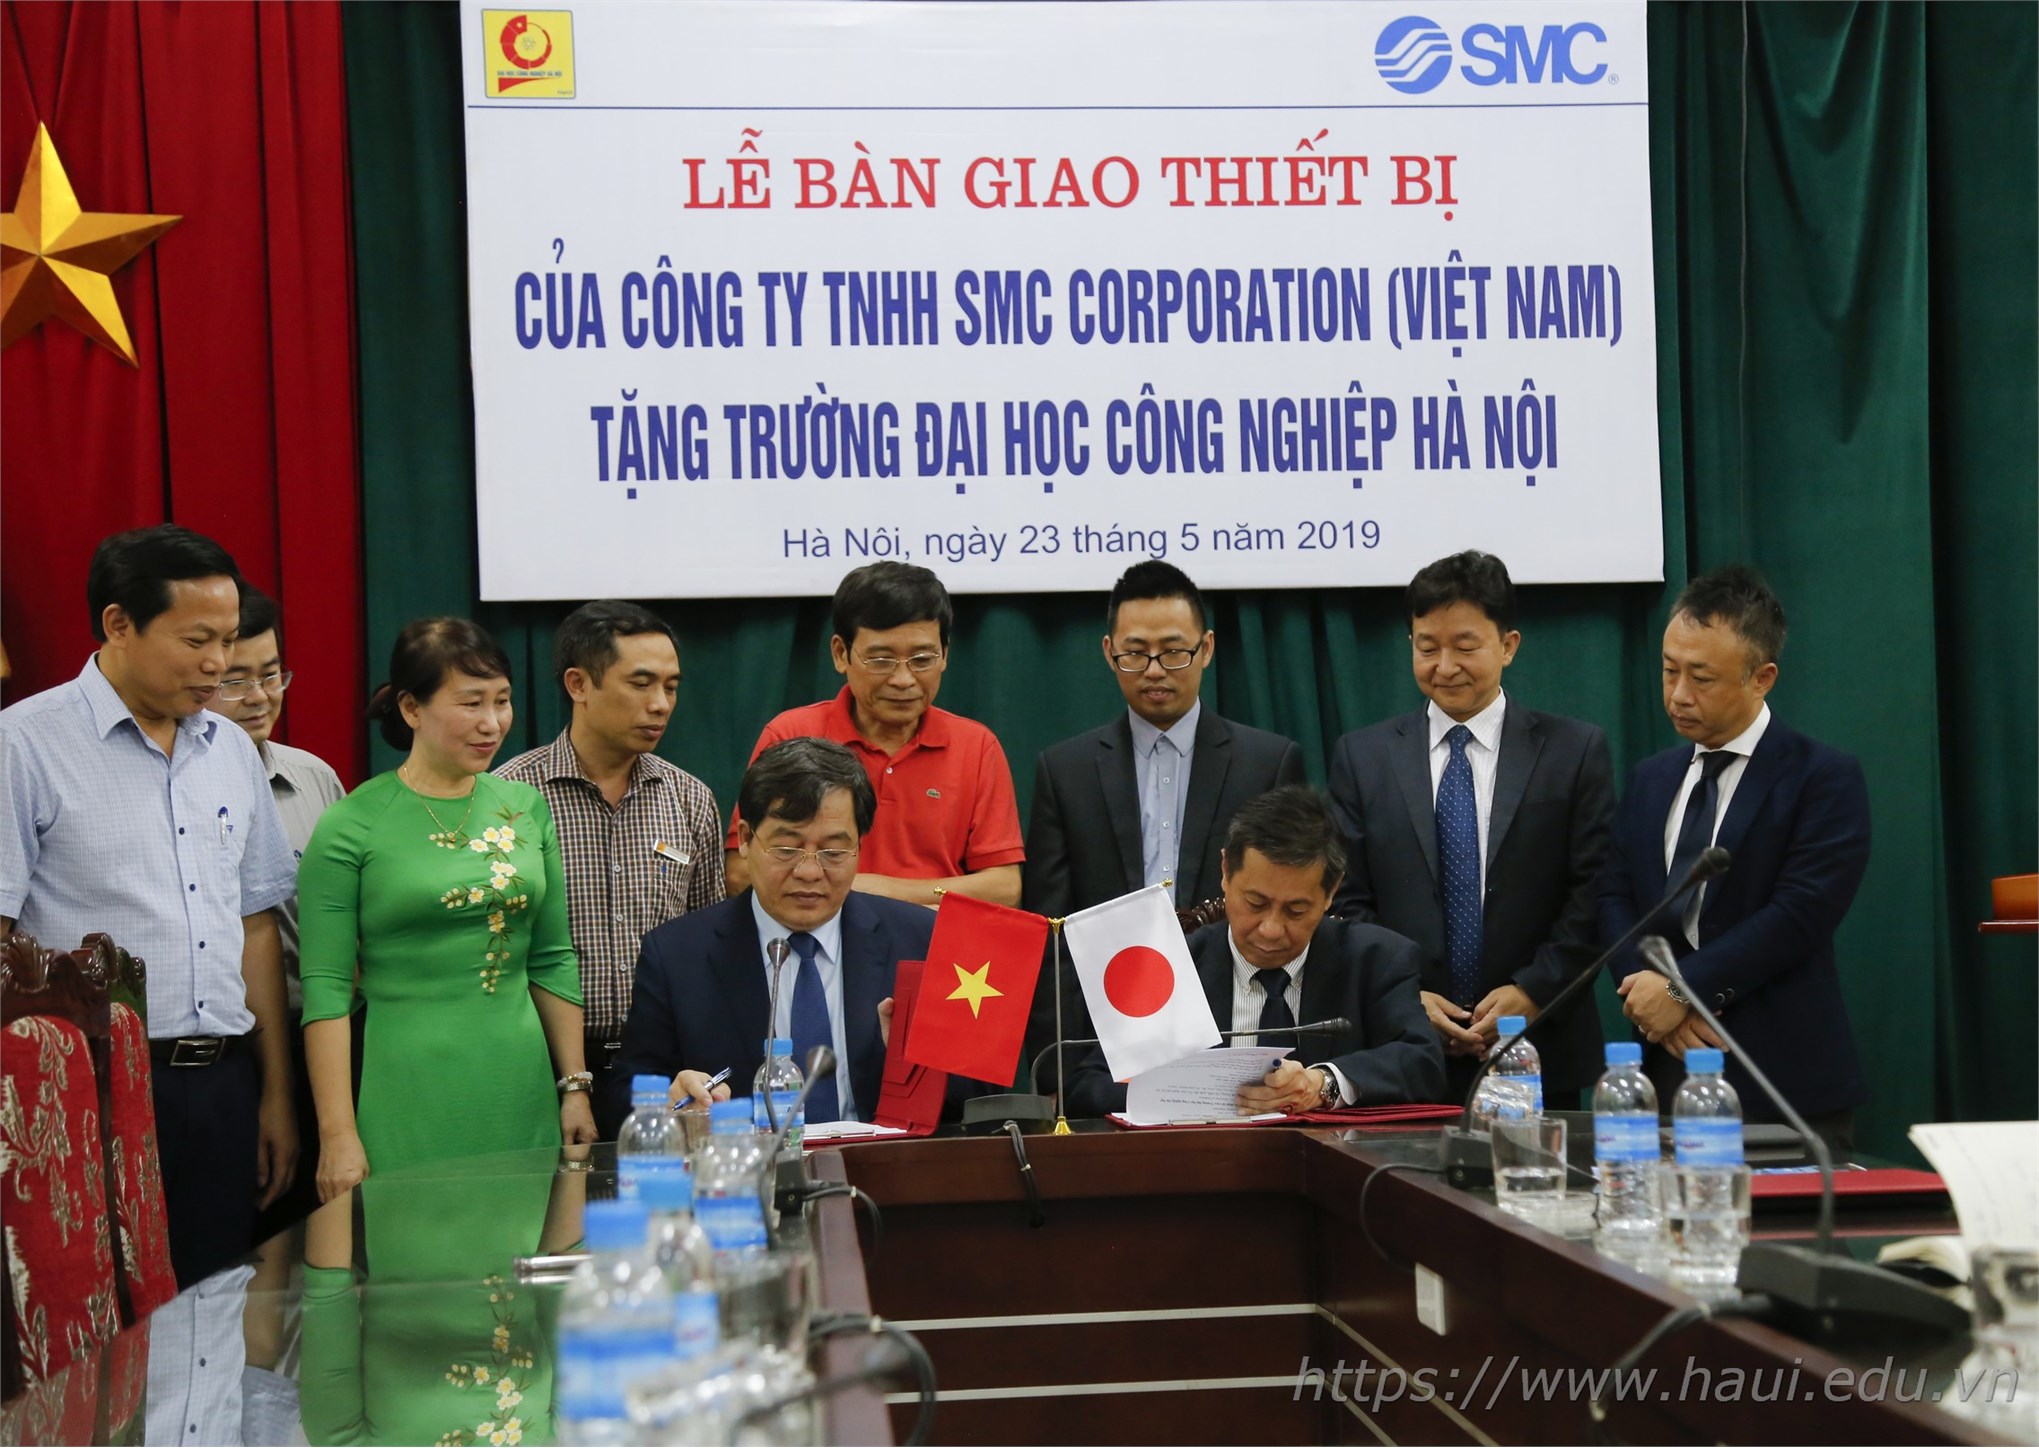 Đại học Công nghiệp Hà Nội đưa vào hoạt động Phòng thí nghiệm kỹ thuật khí nén trị giá 2,3 tỷ đồng